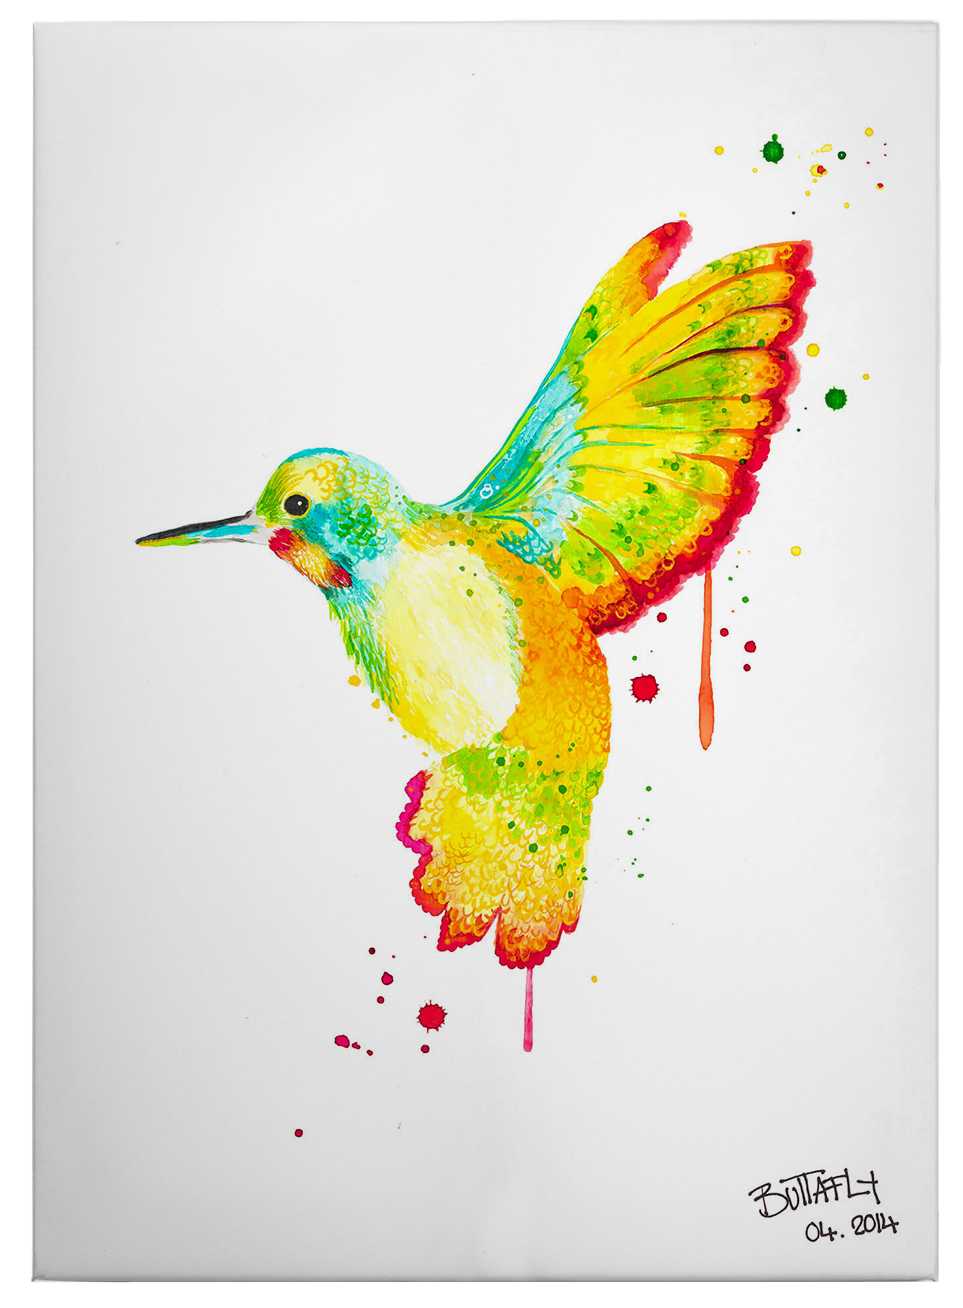             Humingbird by Buttafly, stampa su tela con colibrì colorato - 0,50 m x 0,70 m
        